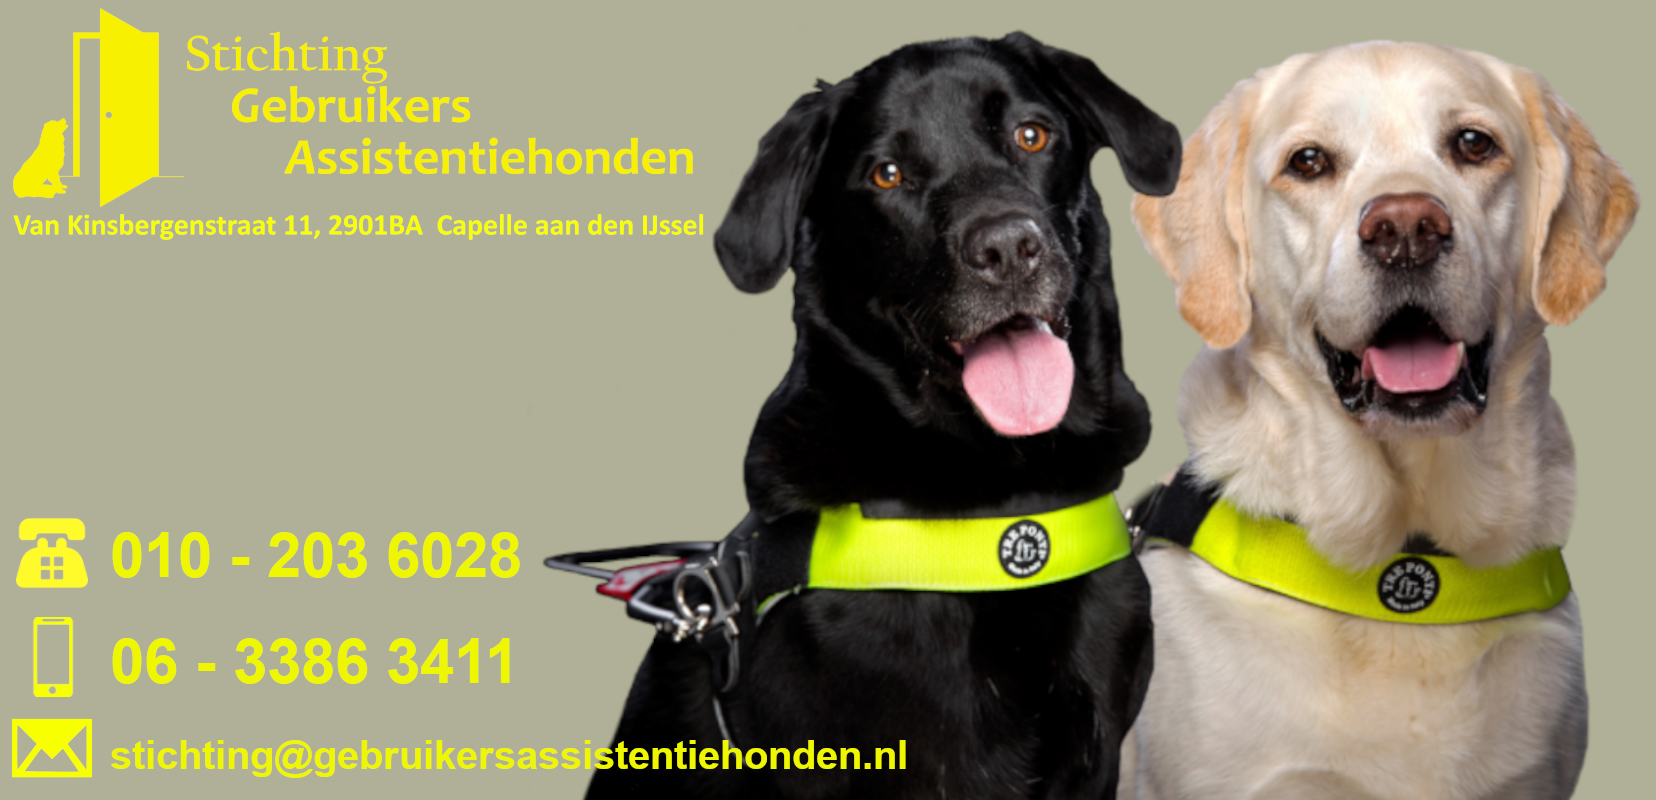 (c) Stichtinggebruikersassistentiehonden.nl